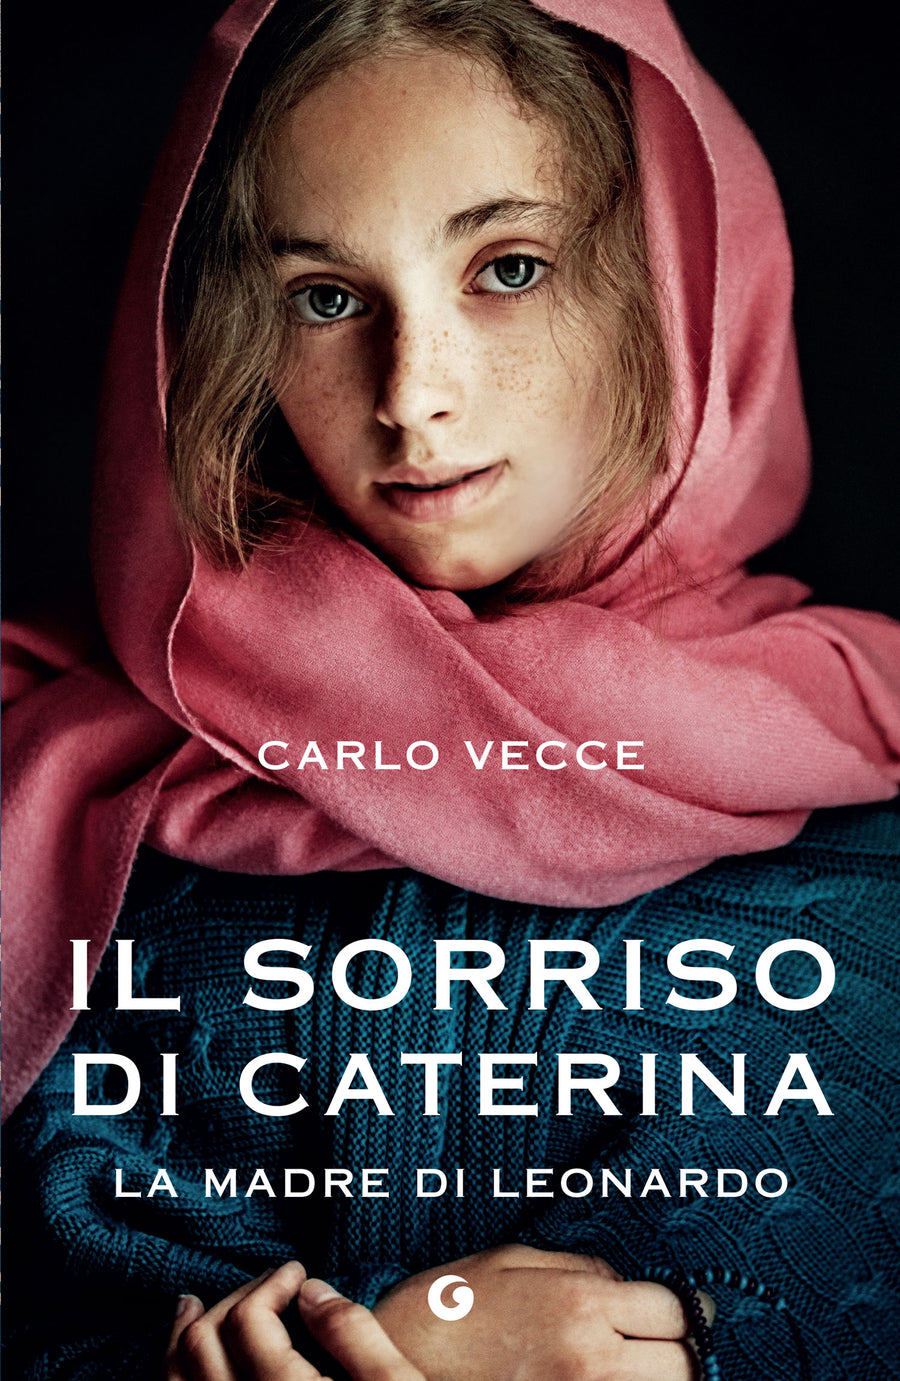 (2023) Carlo Vecce racconta "Il sorriso di Caterina"